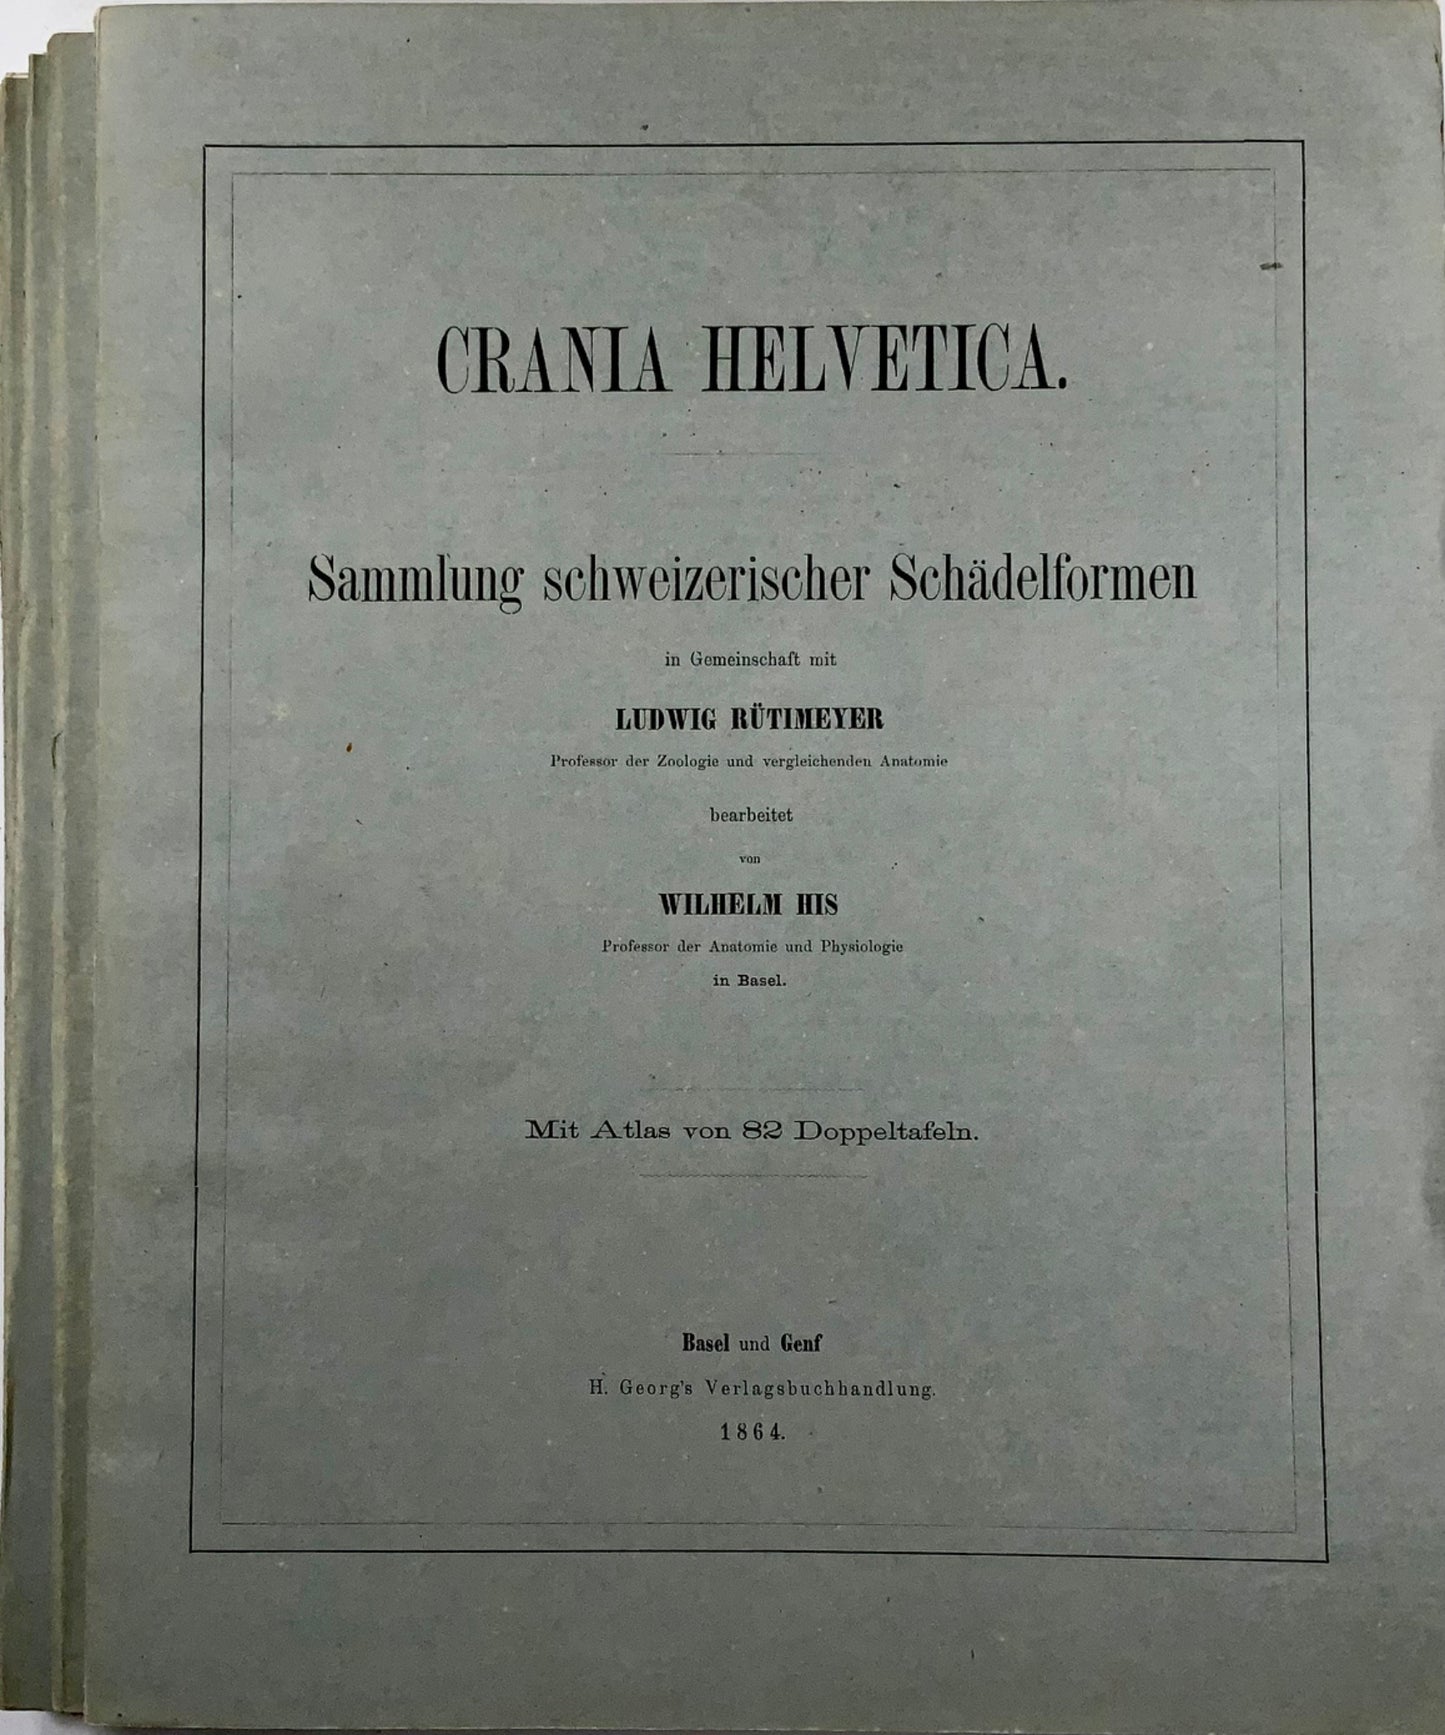 1864 Rutimeyer &amp; His, Crania Helvetica, 82 lithographies sur pierre, édition unique, anatomie, livre